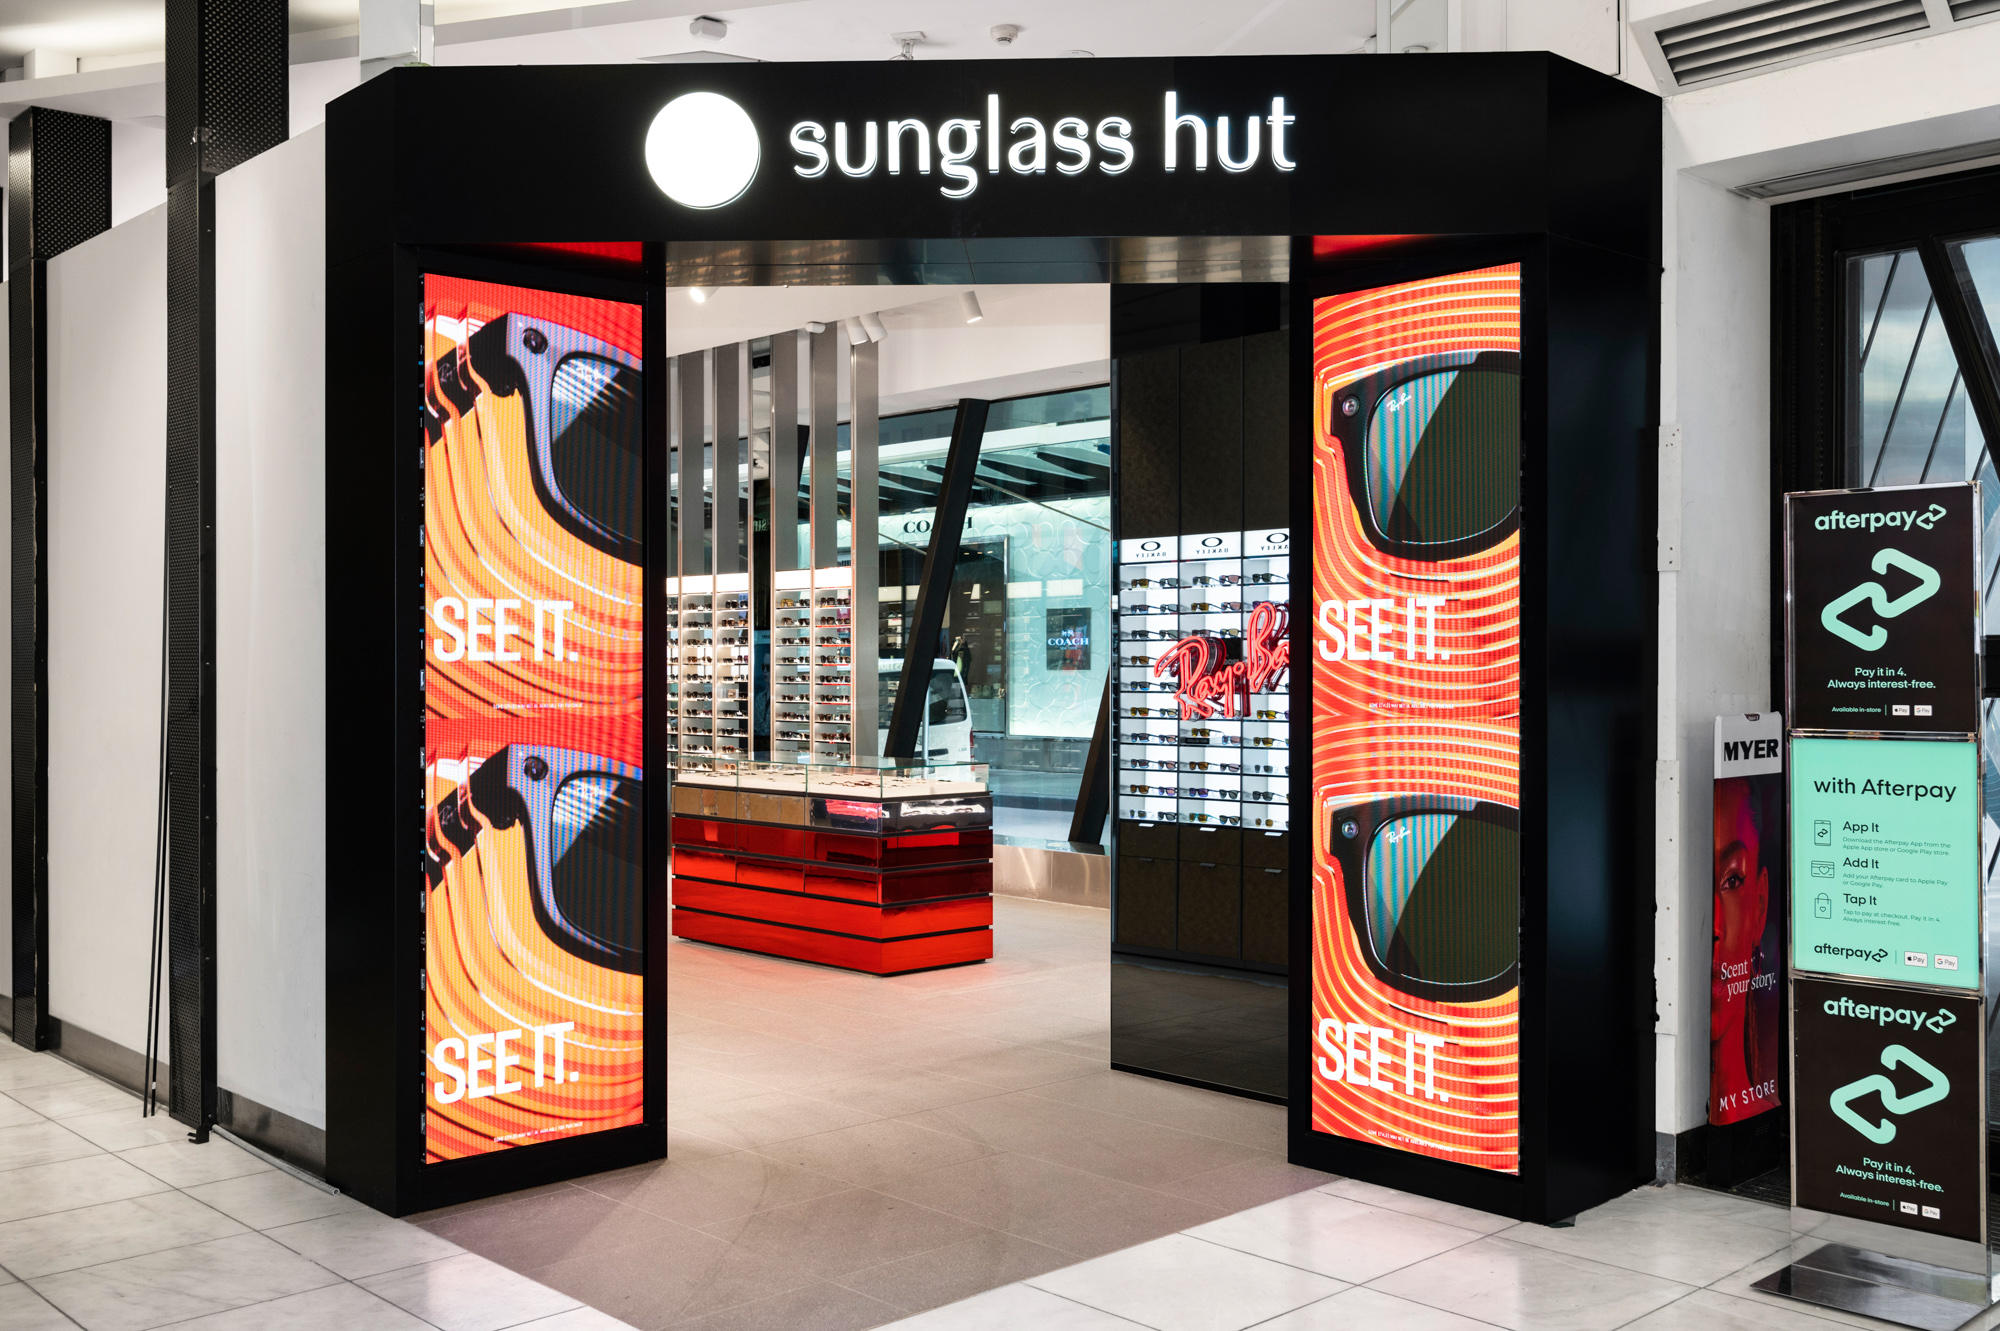 Images Sunglass Hut Myer Melbourne City